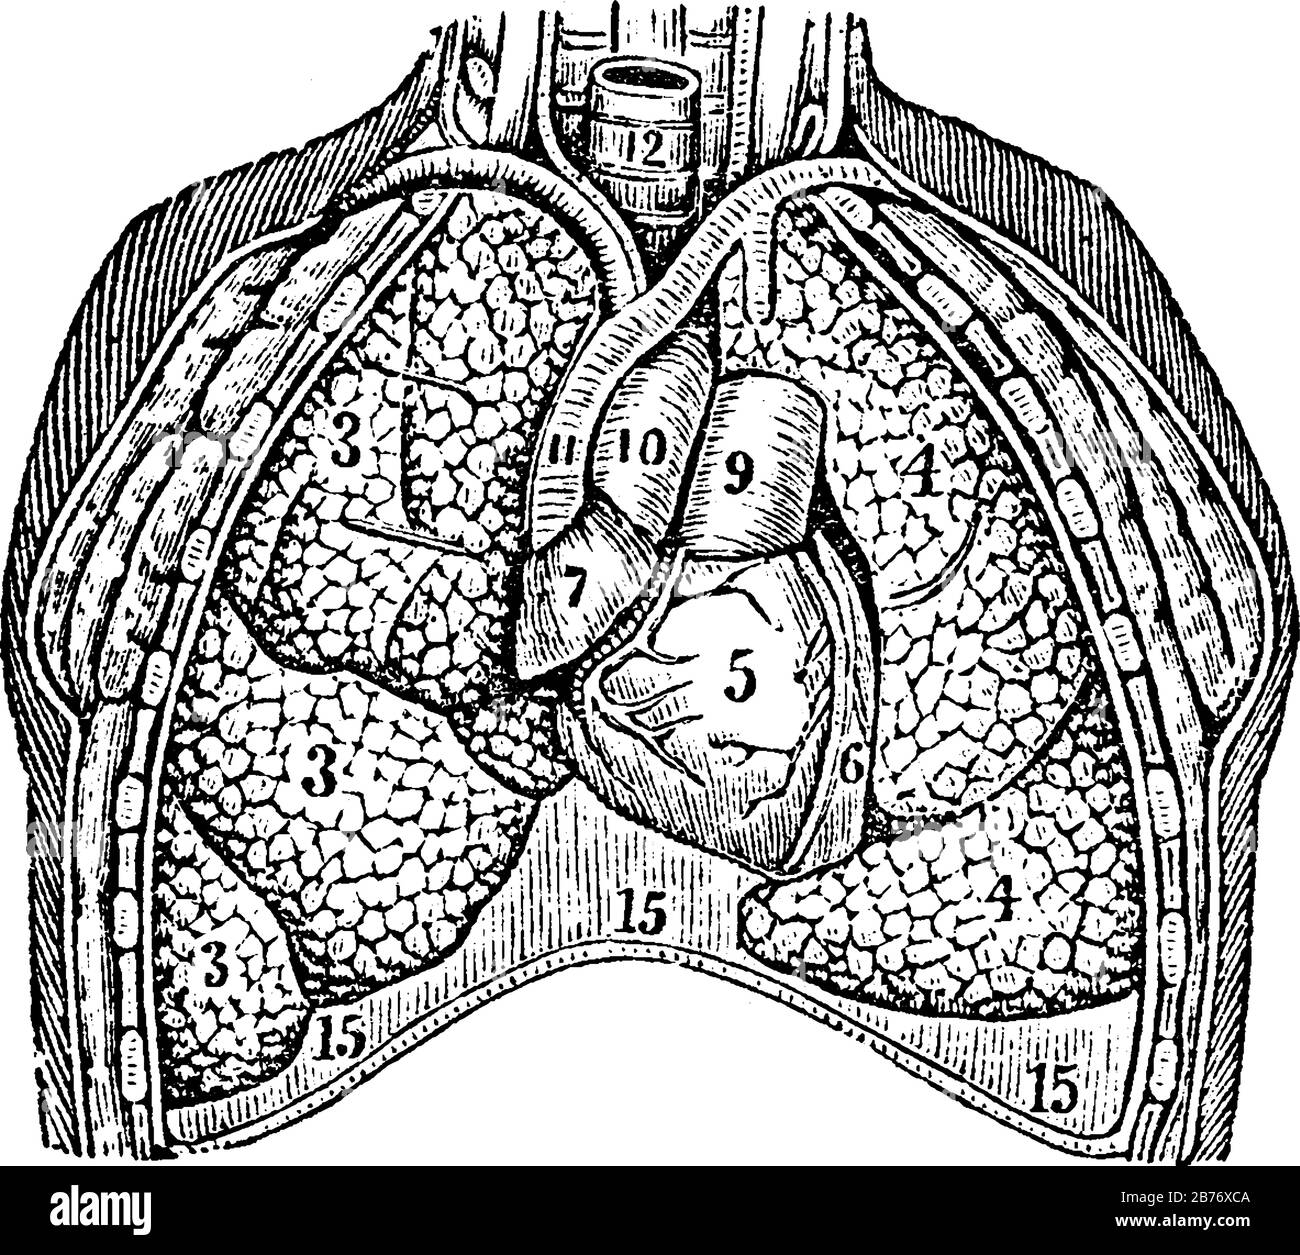 Die Lunge. Etiketten: 3; die Lappen der rechten Lunge. 4; die Lappen der linken Lunge. 5, 6, 7; das Herz. 9, 10, 11; die großen Blutgefäße und andere; V Stock Vektor